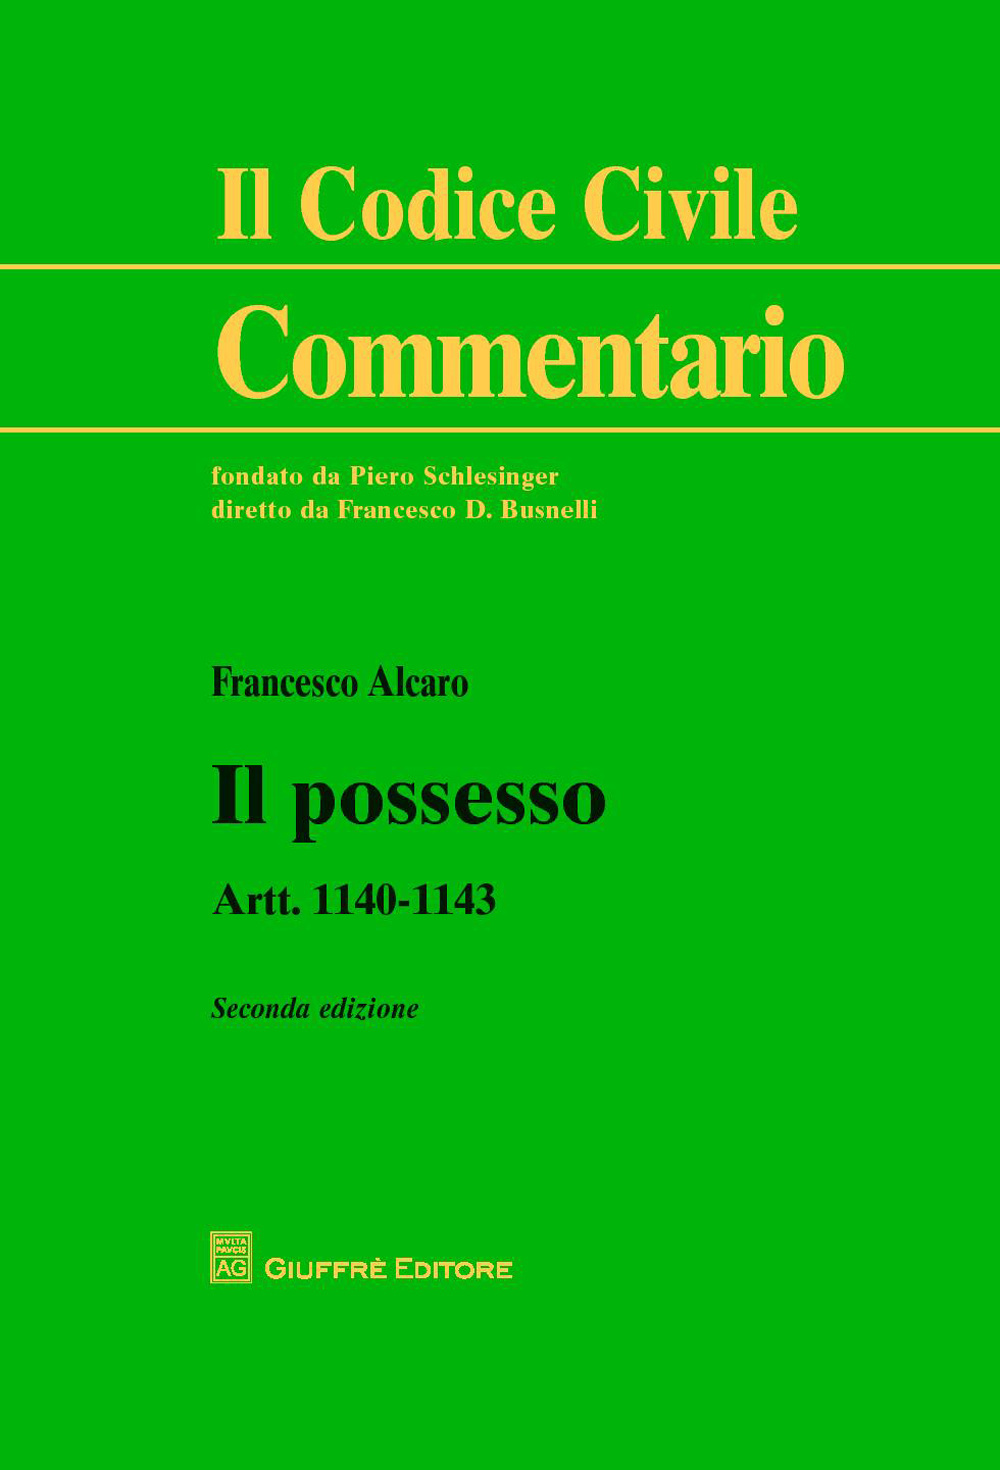 Il possesso. Artt. 1140-1143